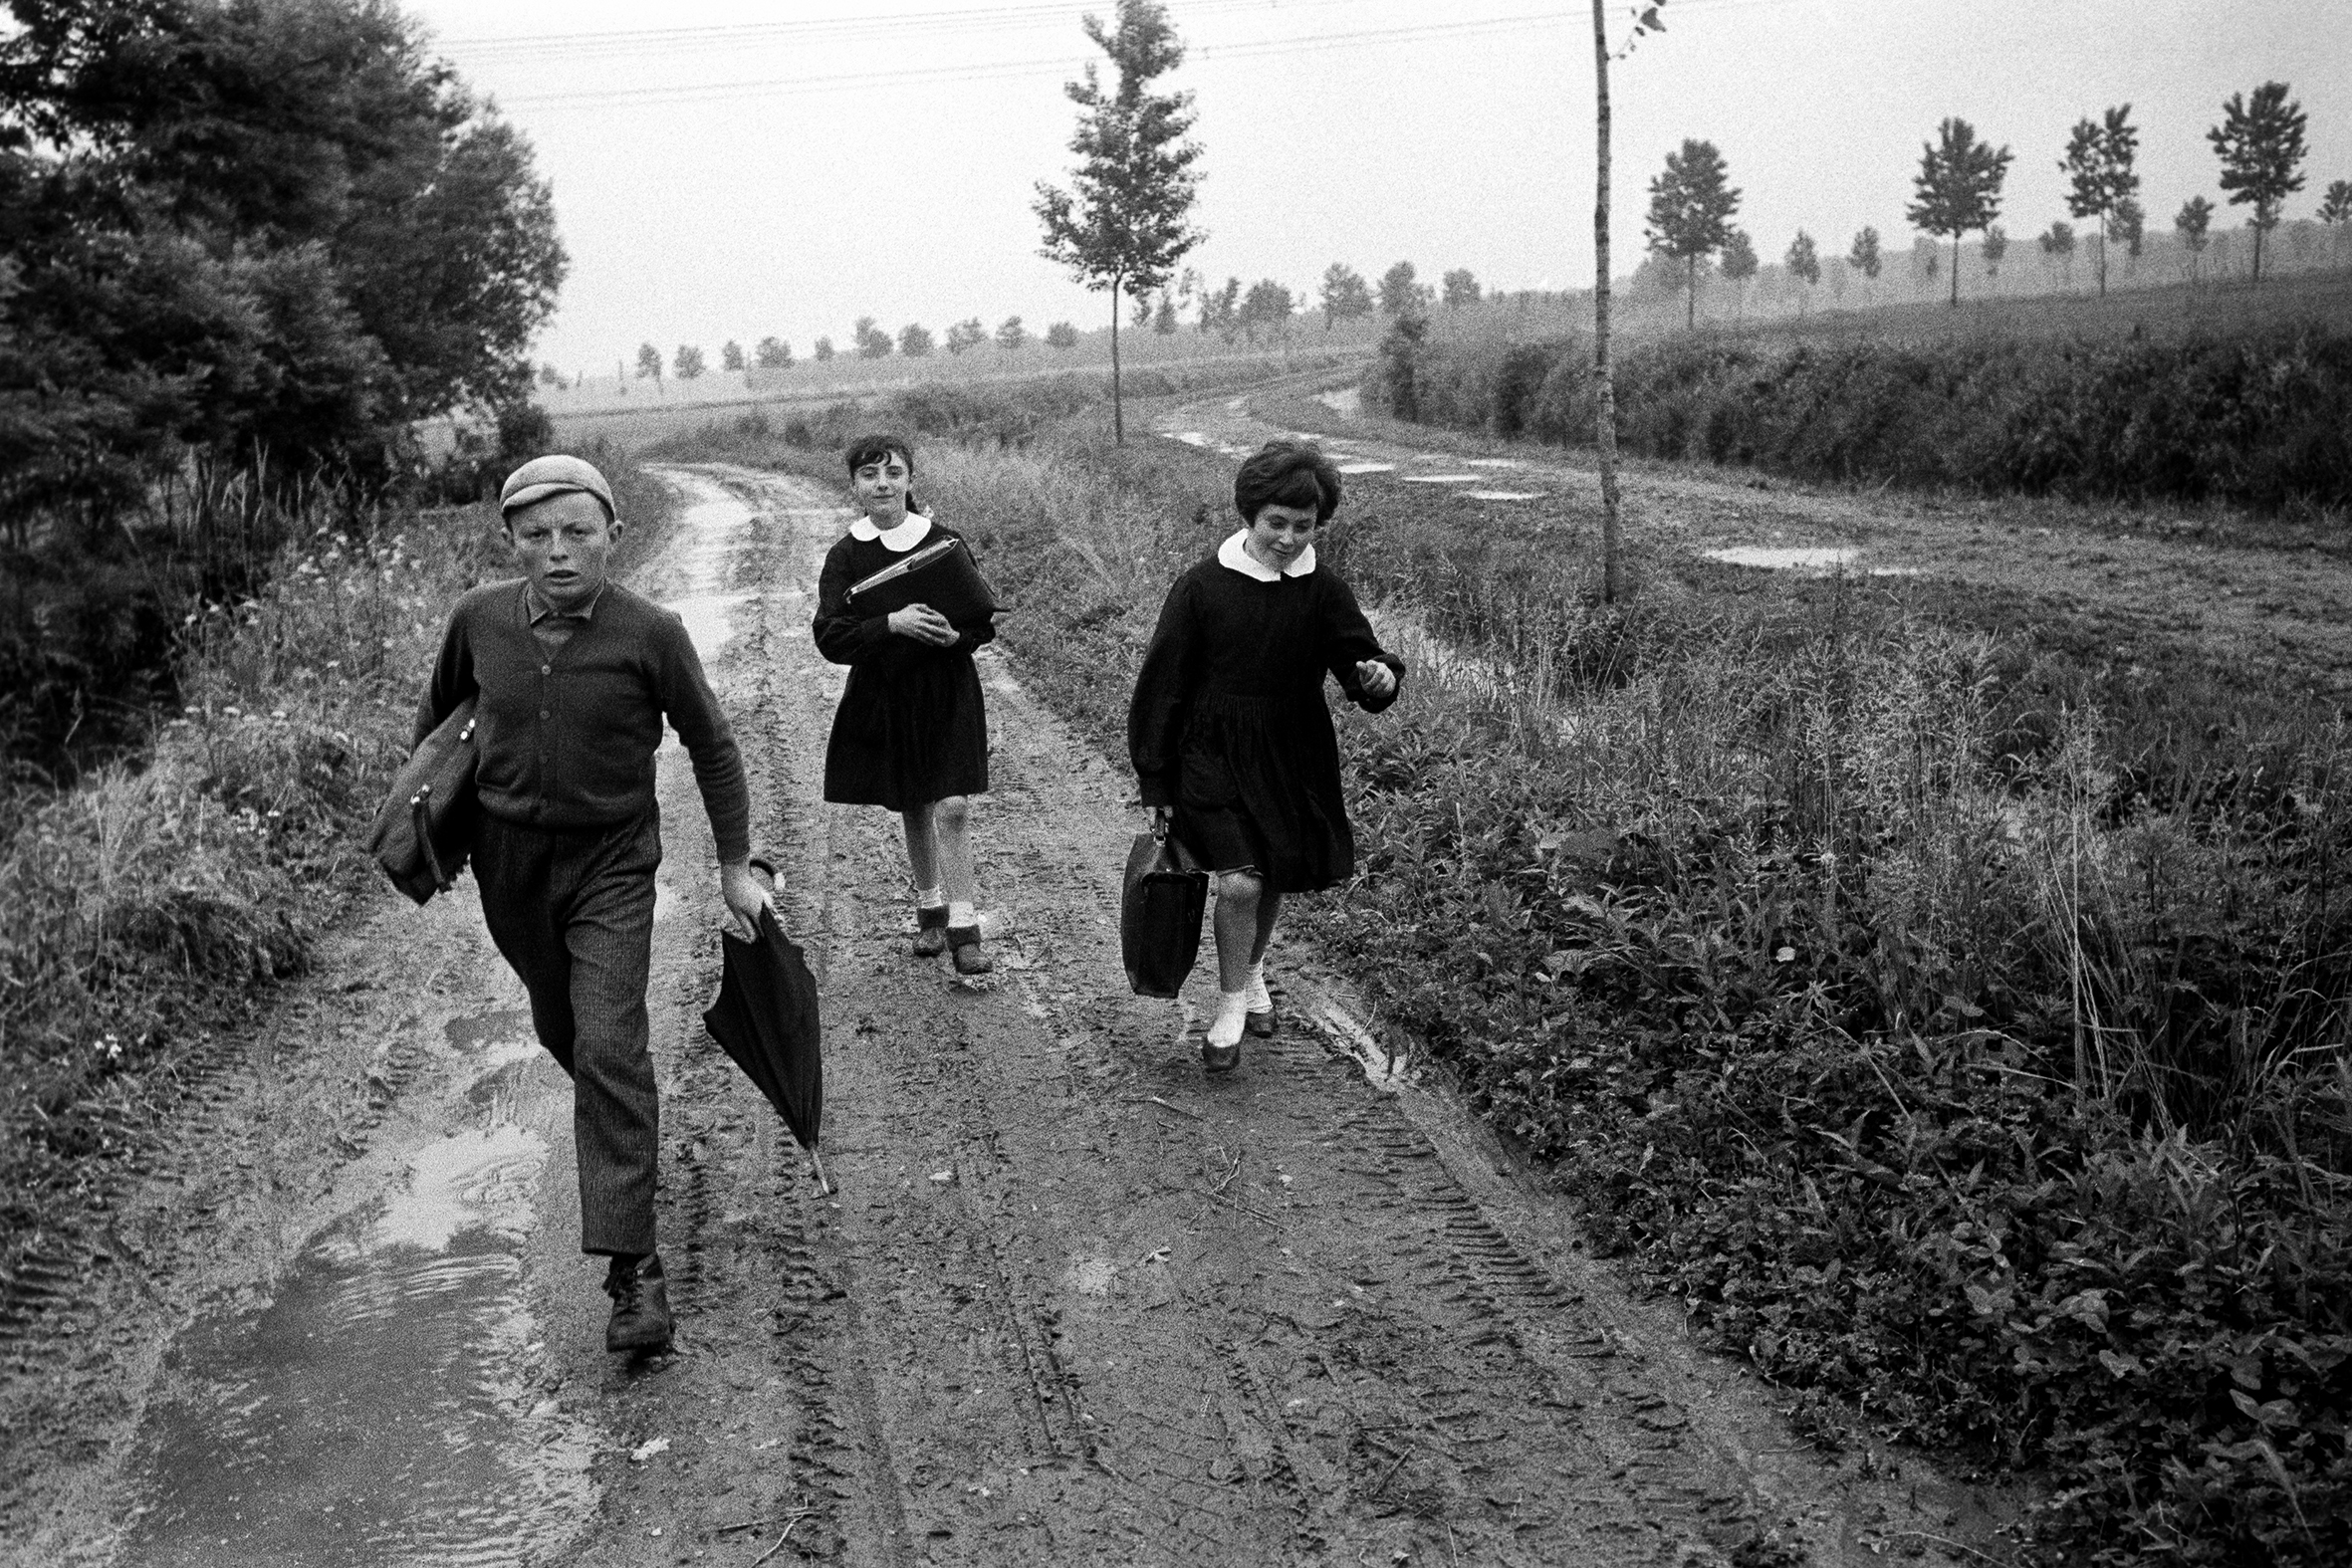 SCUOLA - 7 – Andando a scuola nella pianura emiliana, Reggio Emilia, 1964